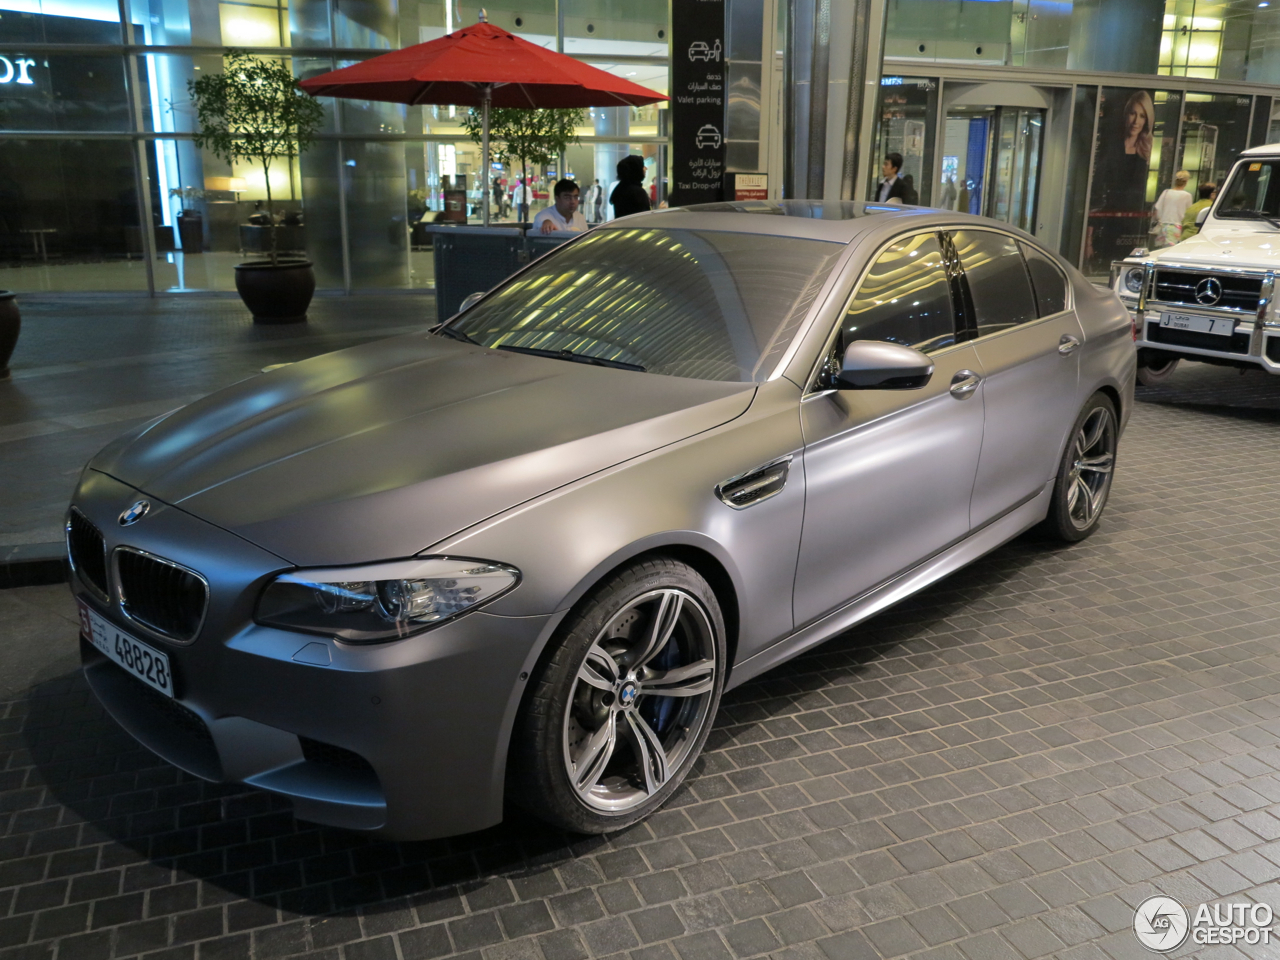 BMW M5 F10 2011 - 17 July 2021 - Autogespot